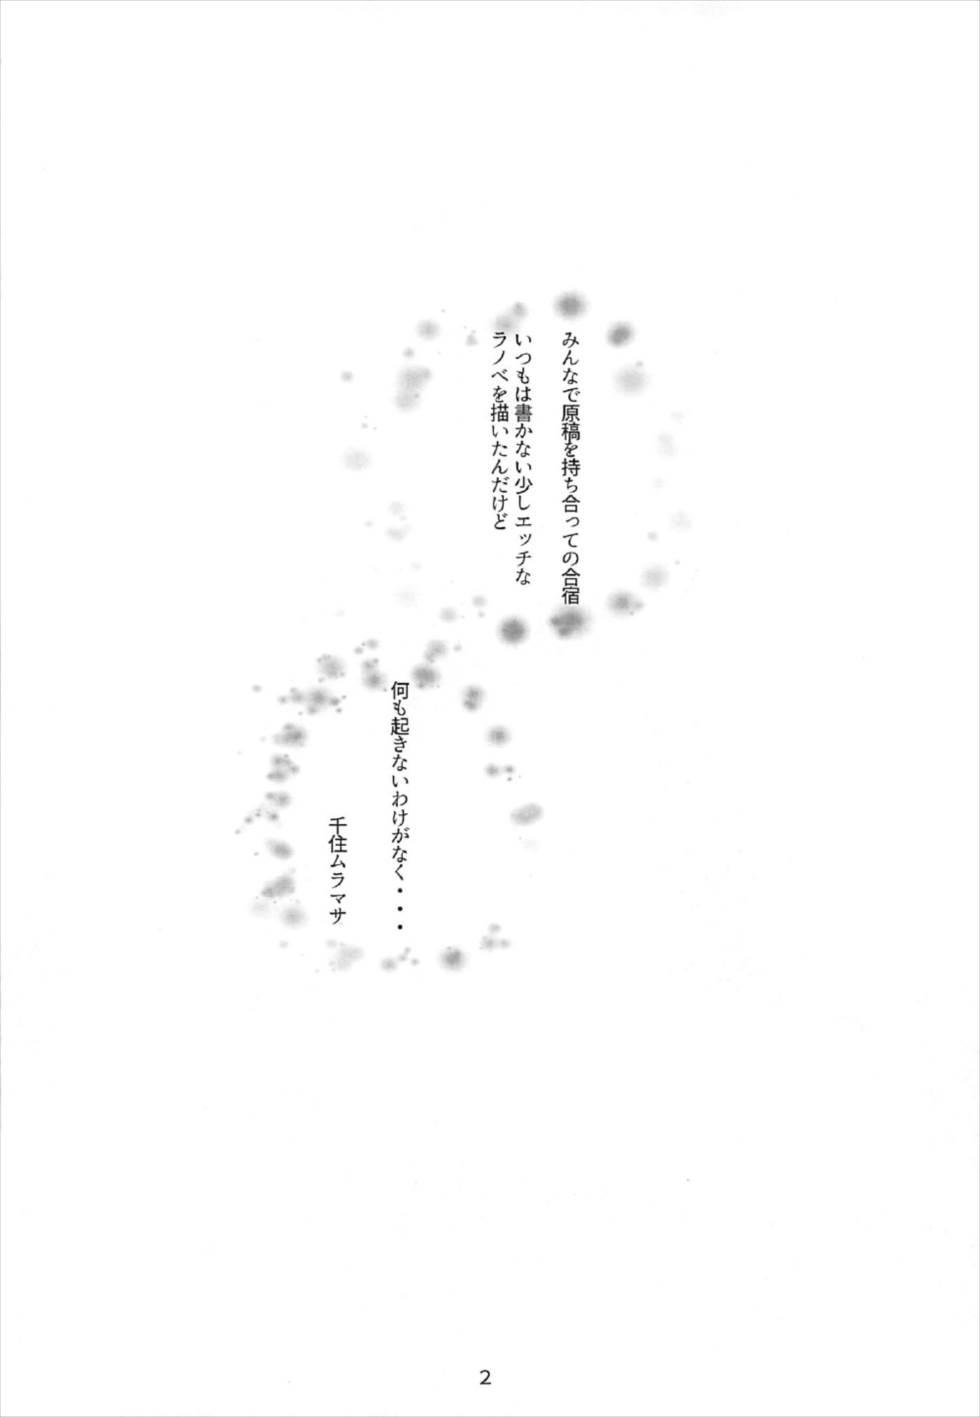 Anal Gape Muramasa-senpai no Ero Light Novel Shuzai - Eromanga sensei Her - Page 3